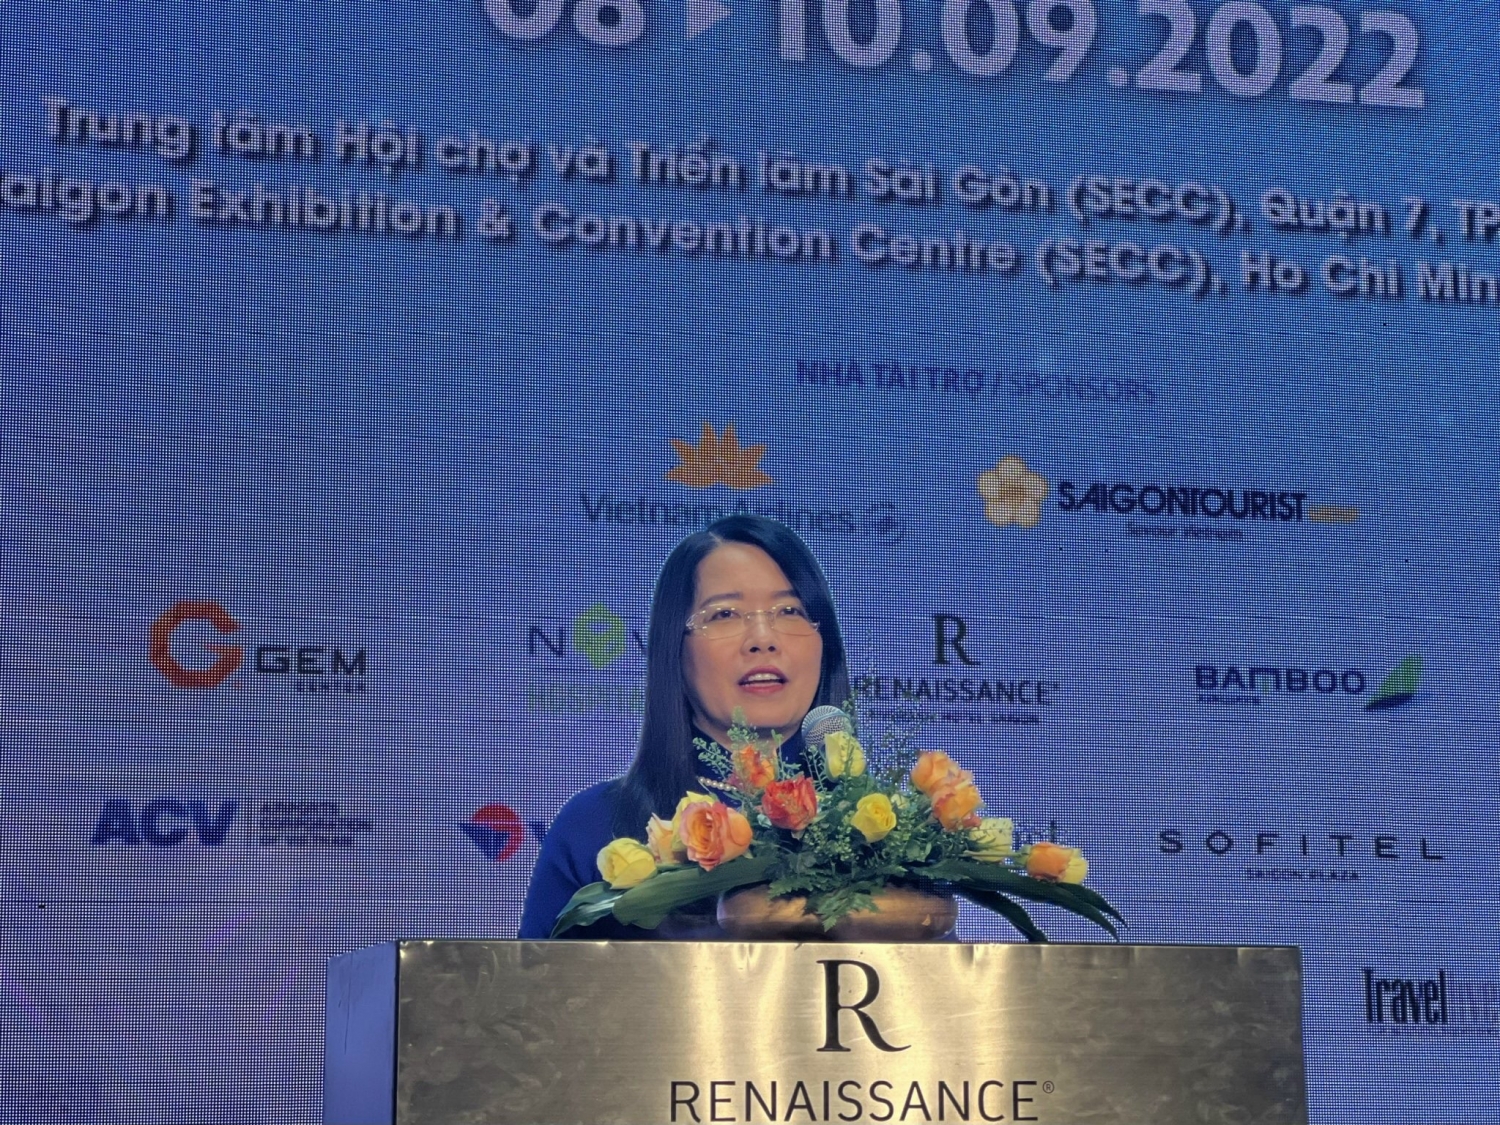 Hội chợ ITE HCMC 2022: Điểm sáng trong bức tranh về xúc tiến phục hồi du lịch